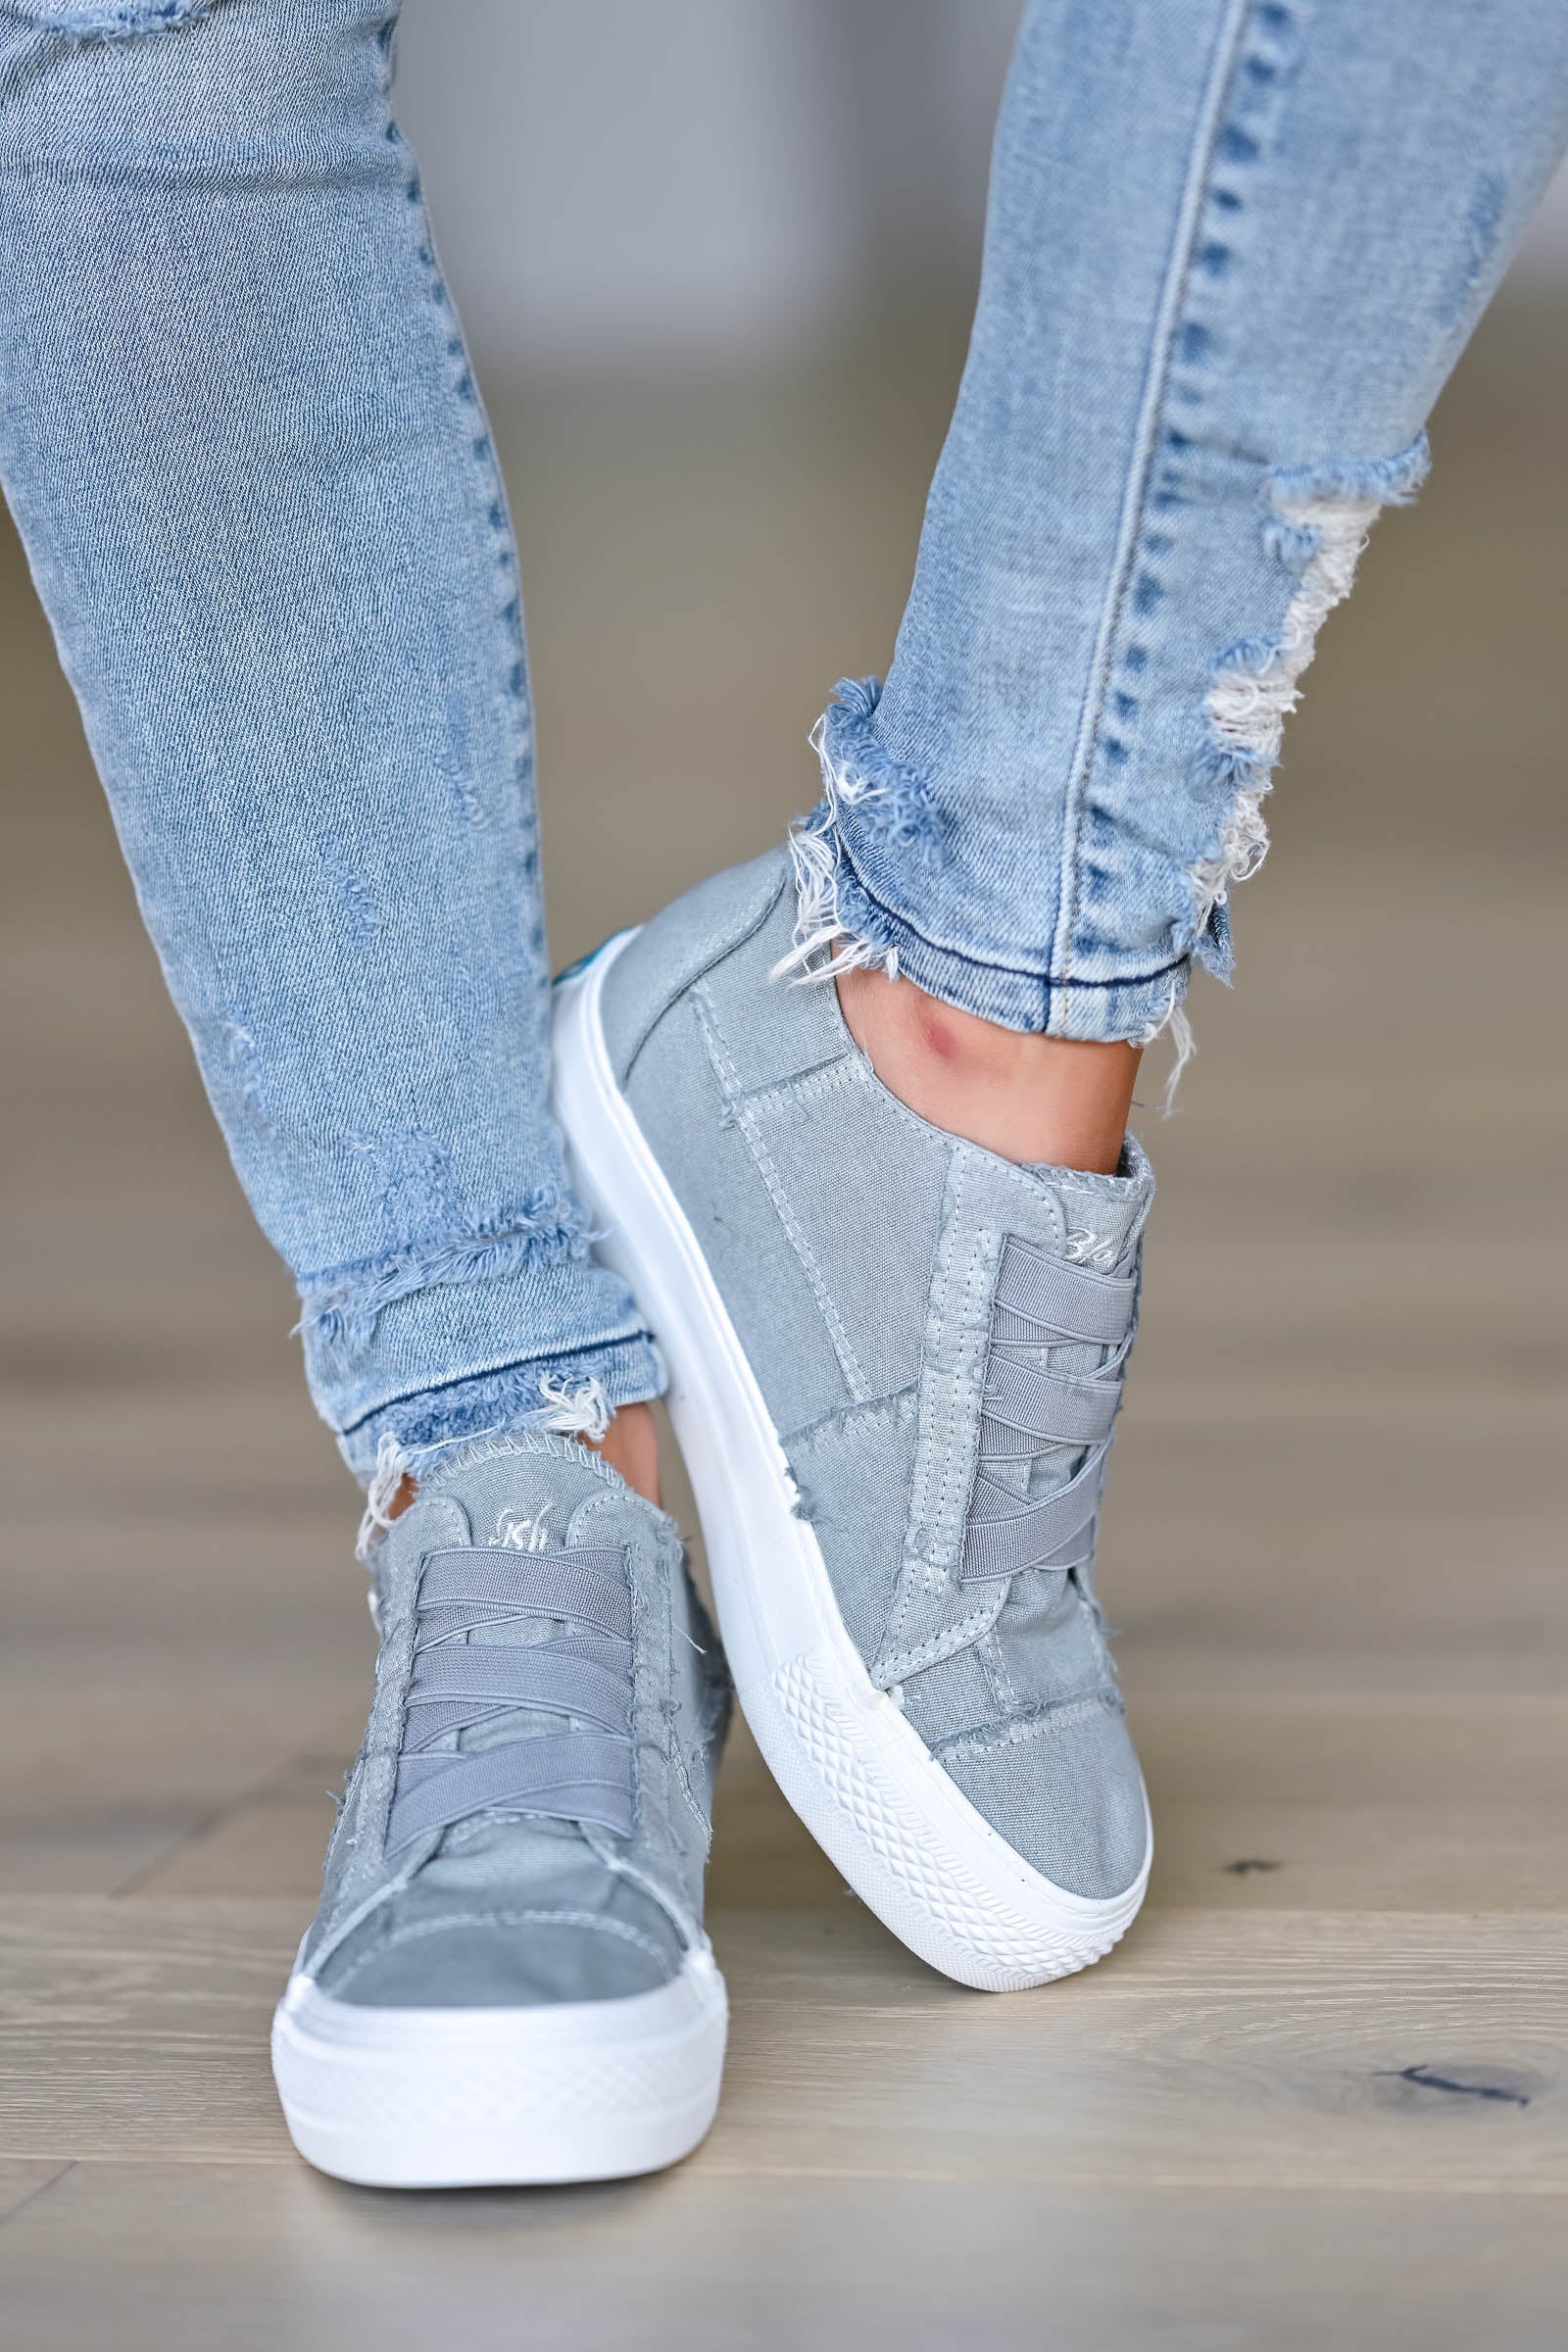 grey wedge sneaker womens